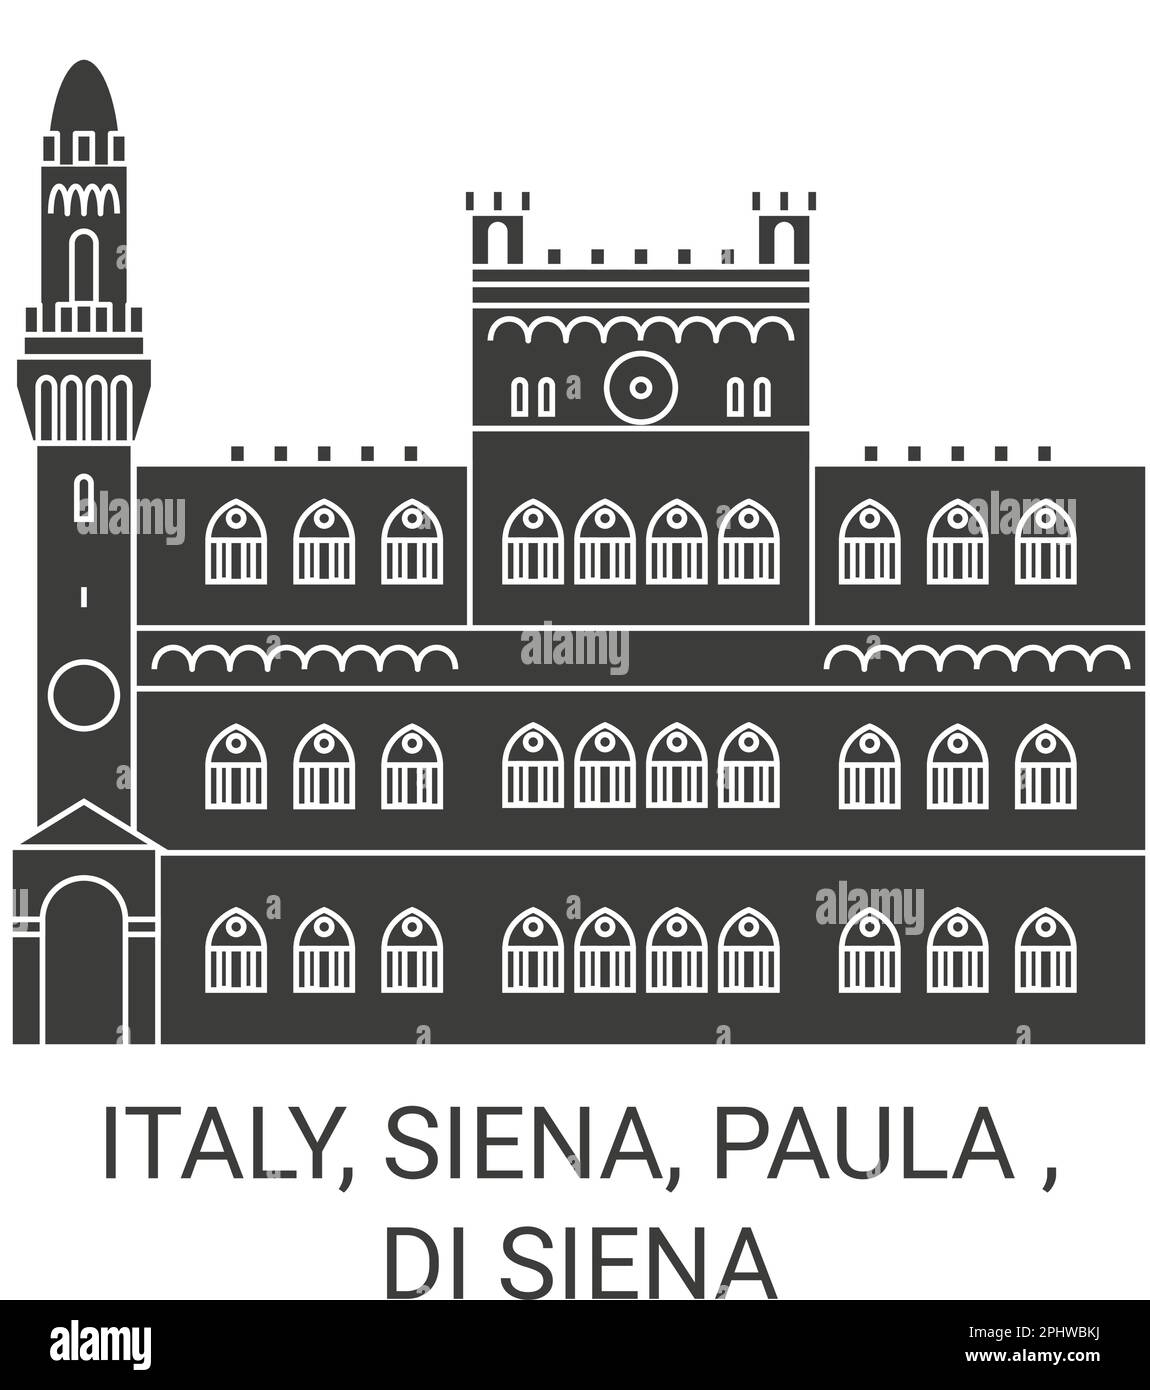 Italien, Siena, Paula, Di Siena Reise Wahrzeichen Vektordarstellung Stock Vektor